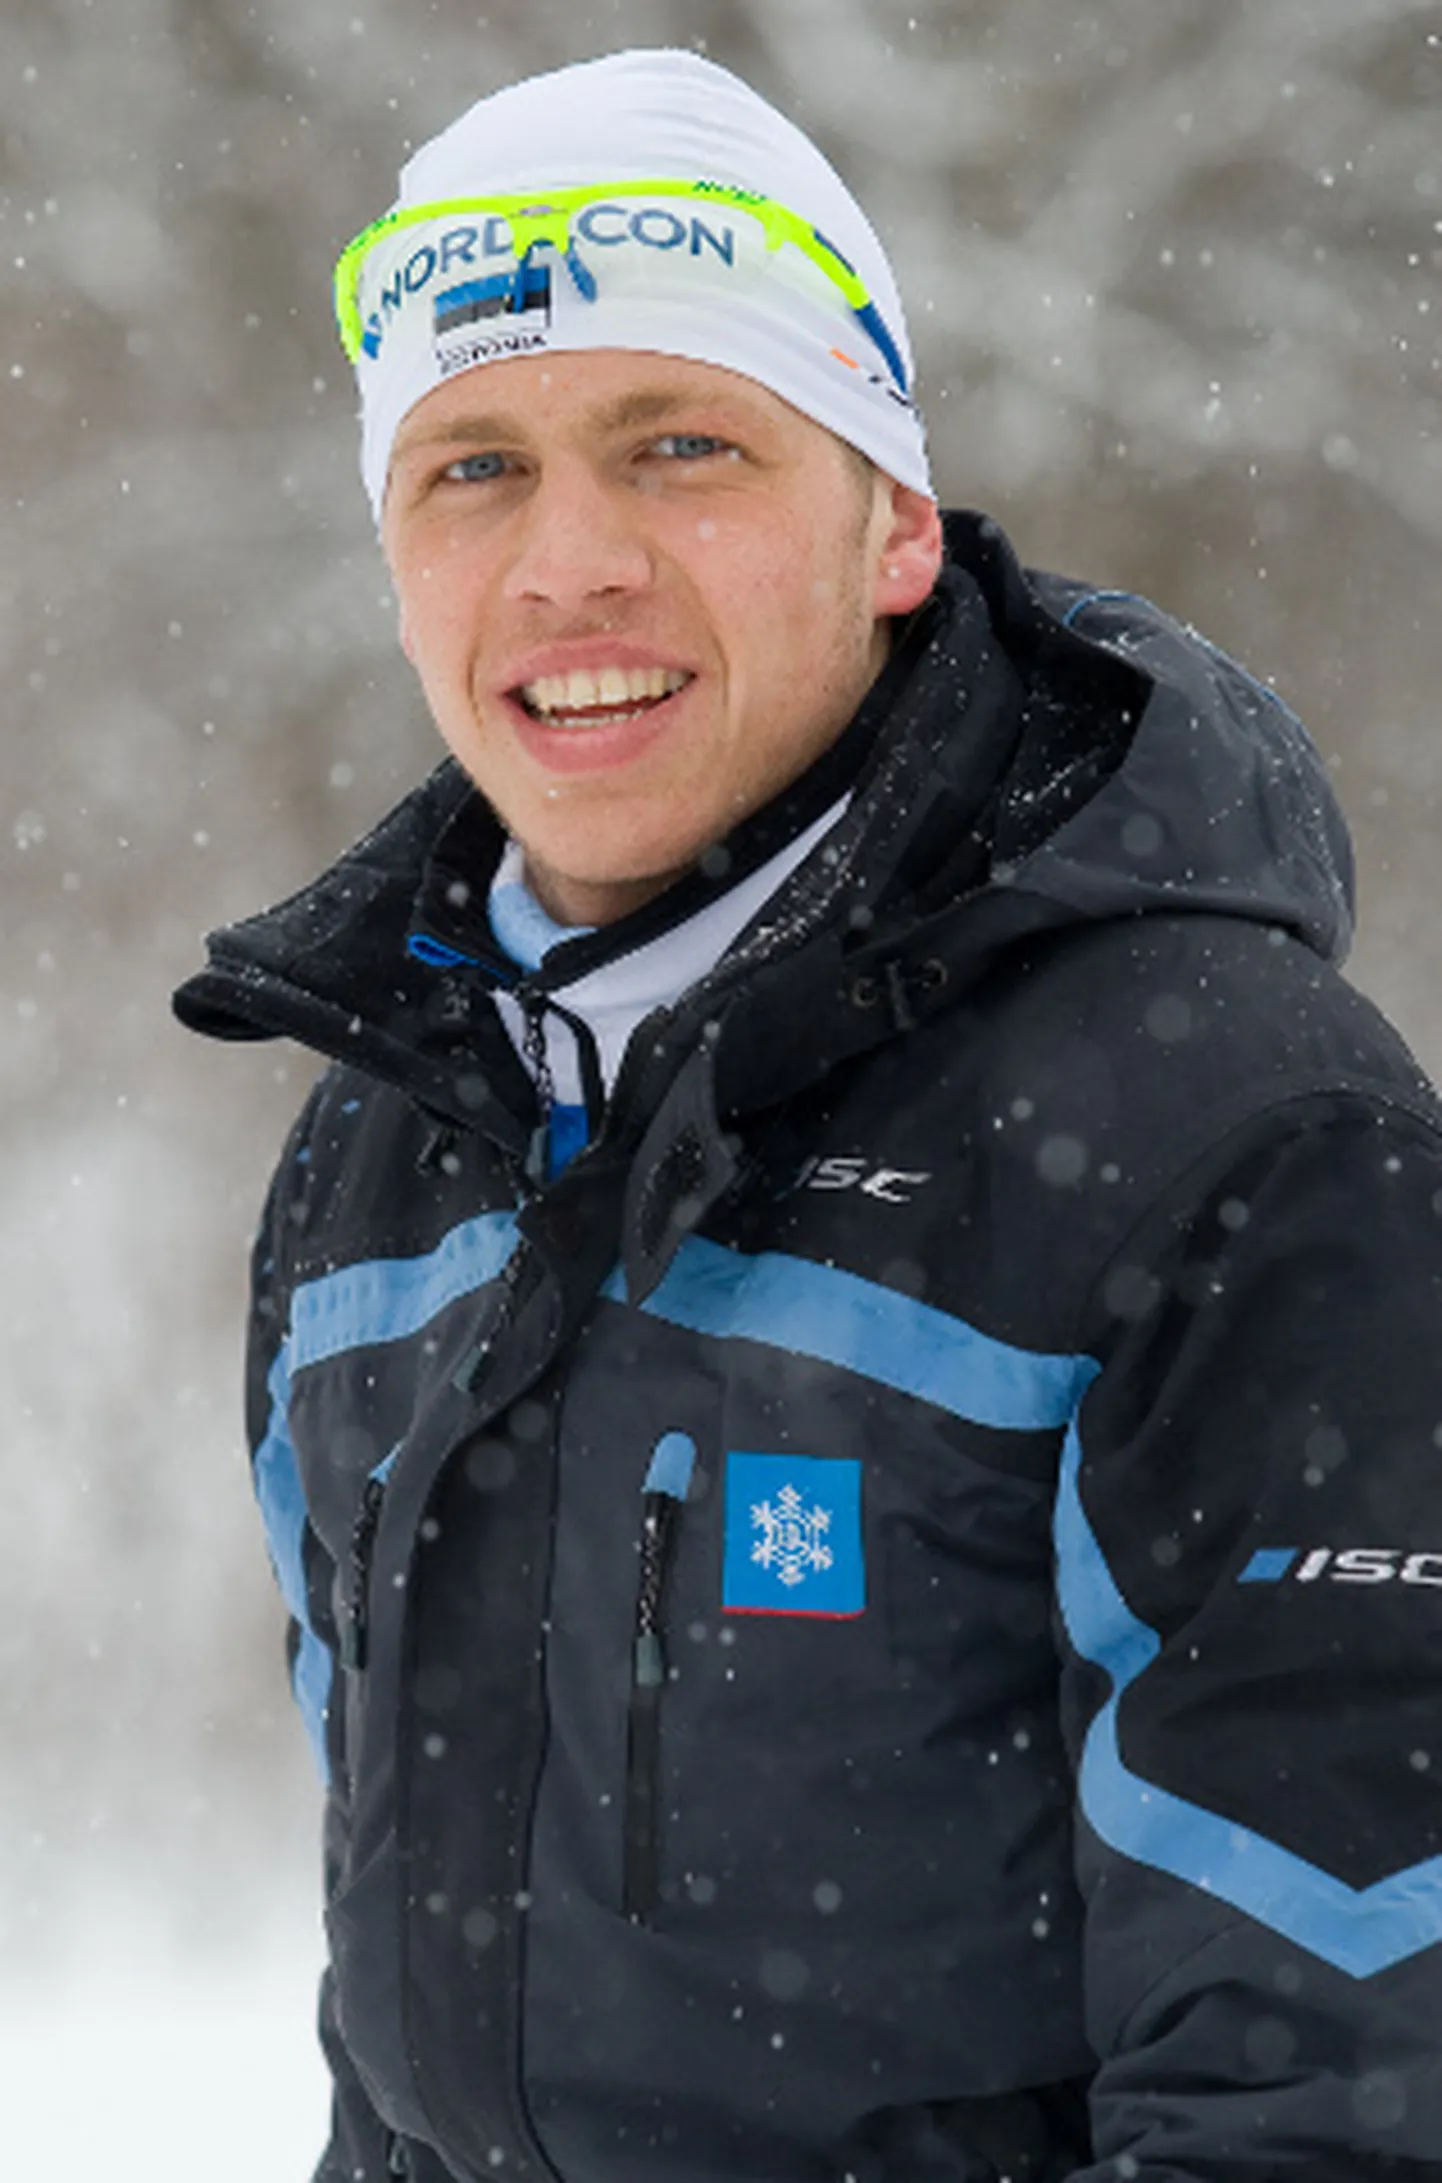 Sillamäelane Aleksandr Maslennikov, kes ainsa Ida-Virumaa meessuusatajana sai koha Eesti U23 koondises, ei välista lõplikult võimalust, et ta kunagi naaseb tippsuusatamise juurde.